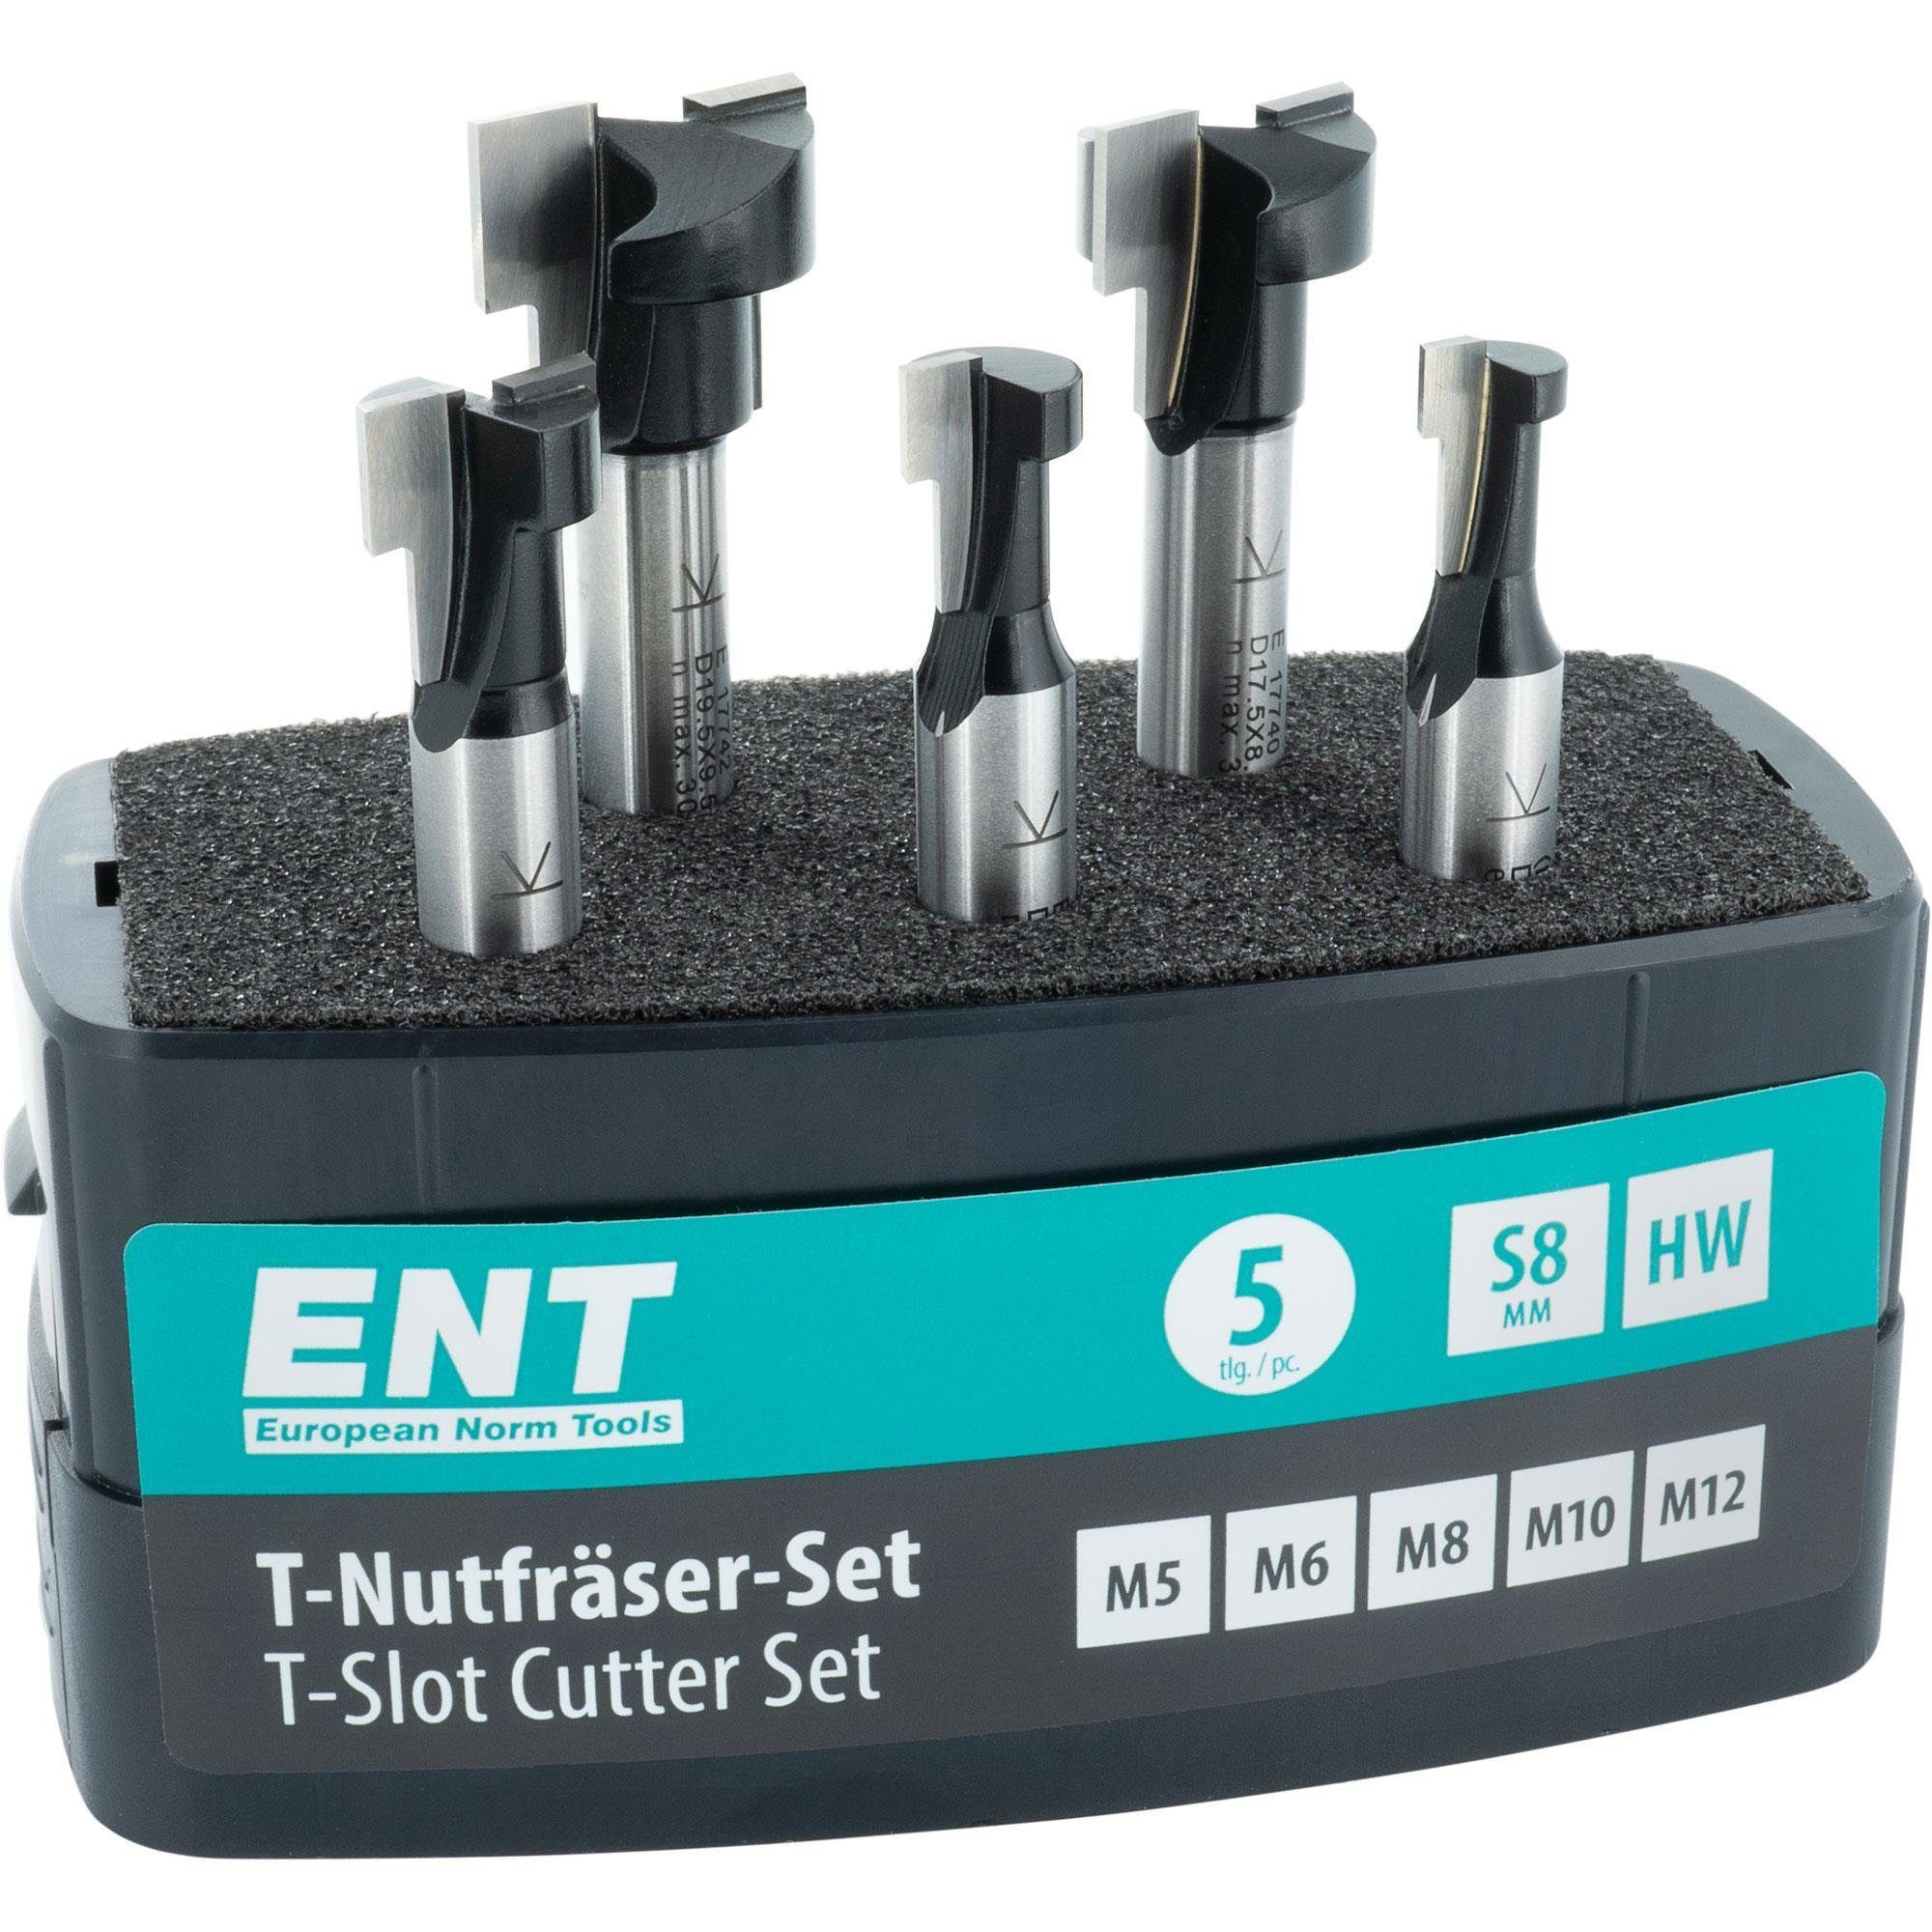 ENT European Norm Tools T-Nutfräser 09055 5-tlg. T-Nutfräser-Set, für M5, M6, M8, M10 und M12 Sechskantschrauben - Schaft Ø 8 mm, Hartmetall